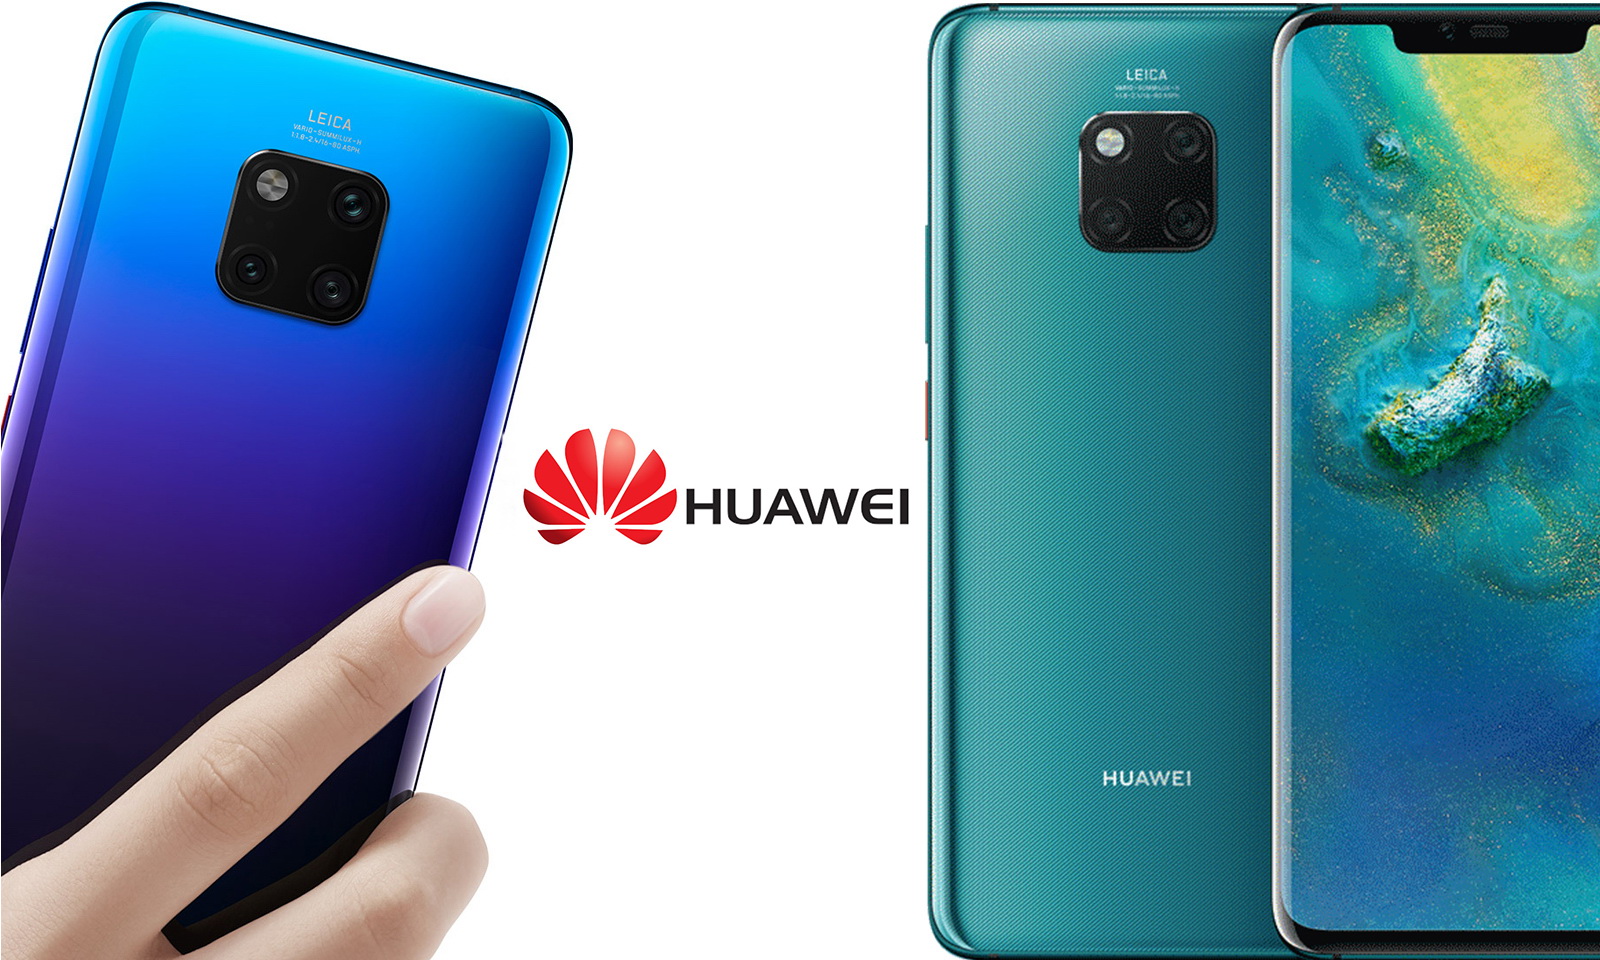 Huawei 5G Smartphones